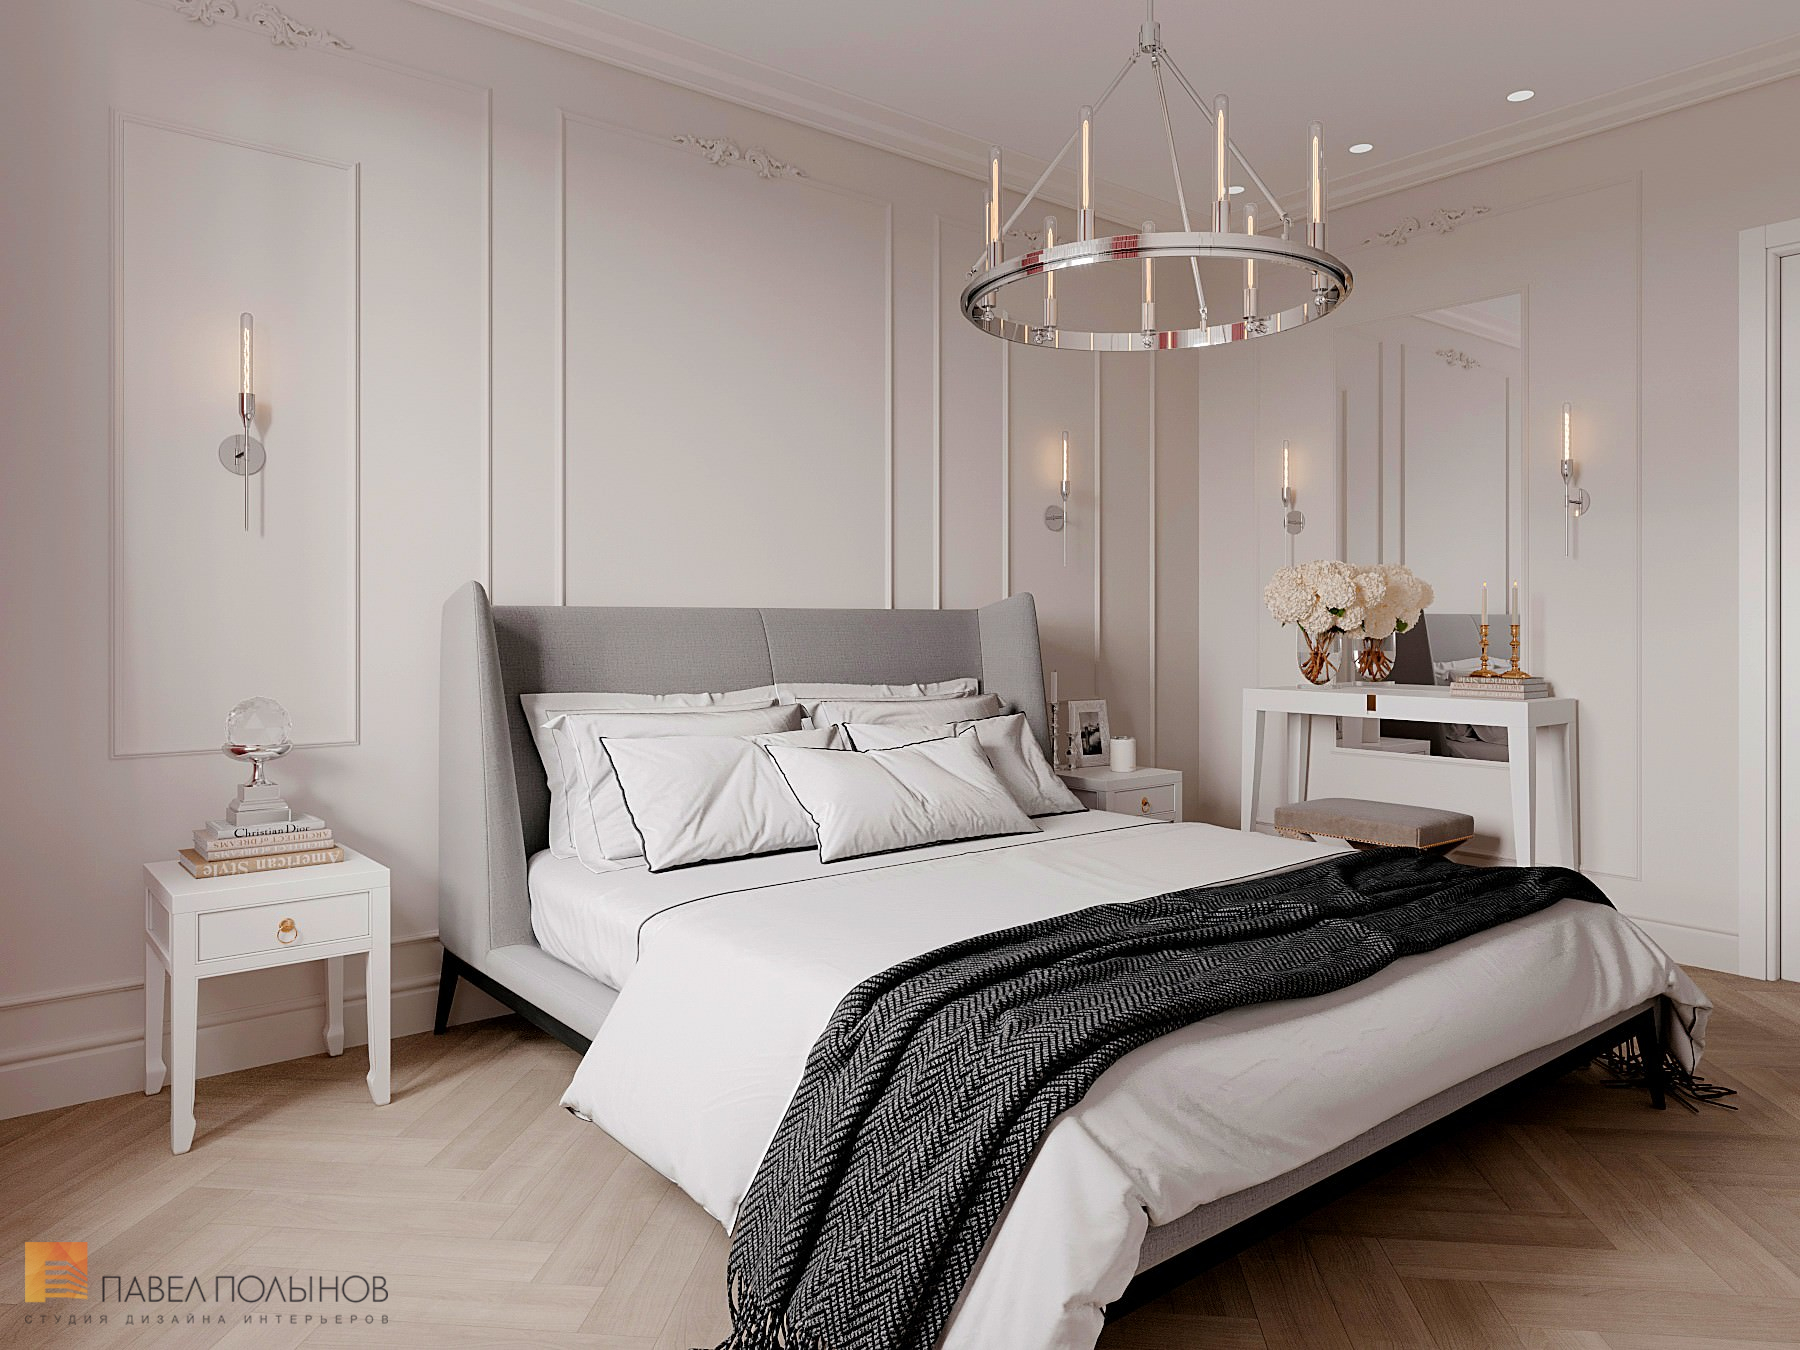 Фото дизайн спальни из проекта «Квартира в стиле неоклассики, ЖК «Skandi Klubb», 76 кв.м.»